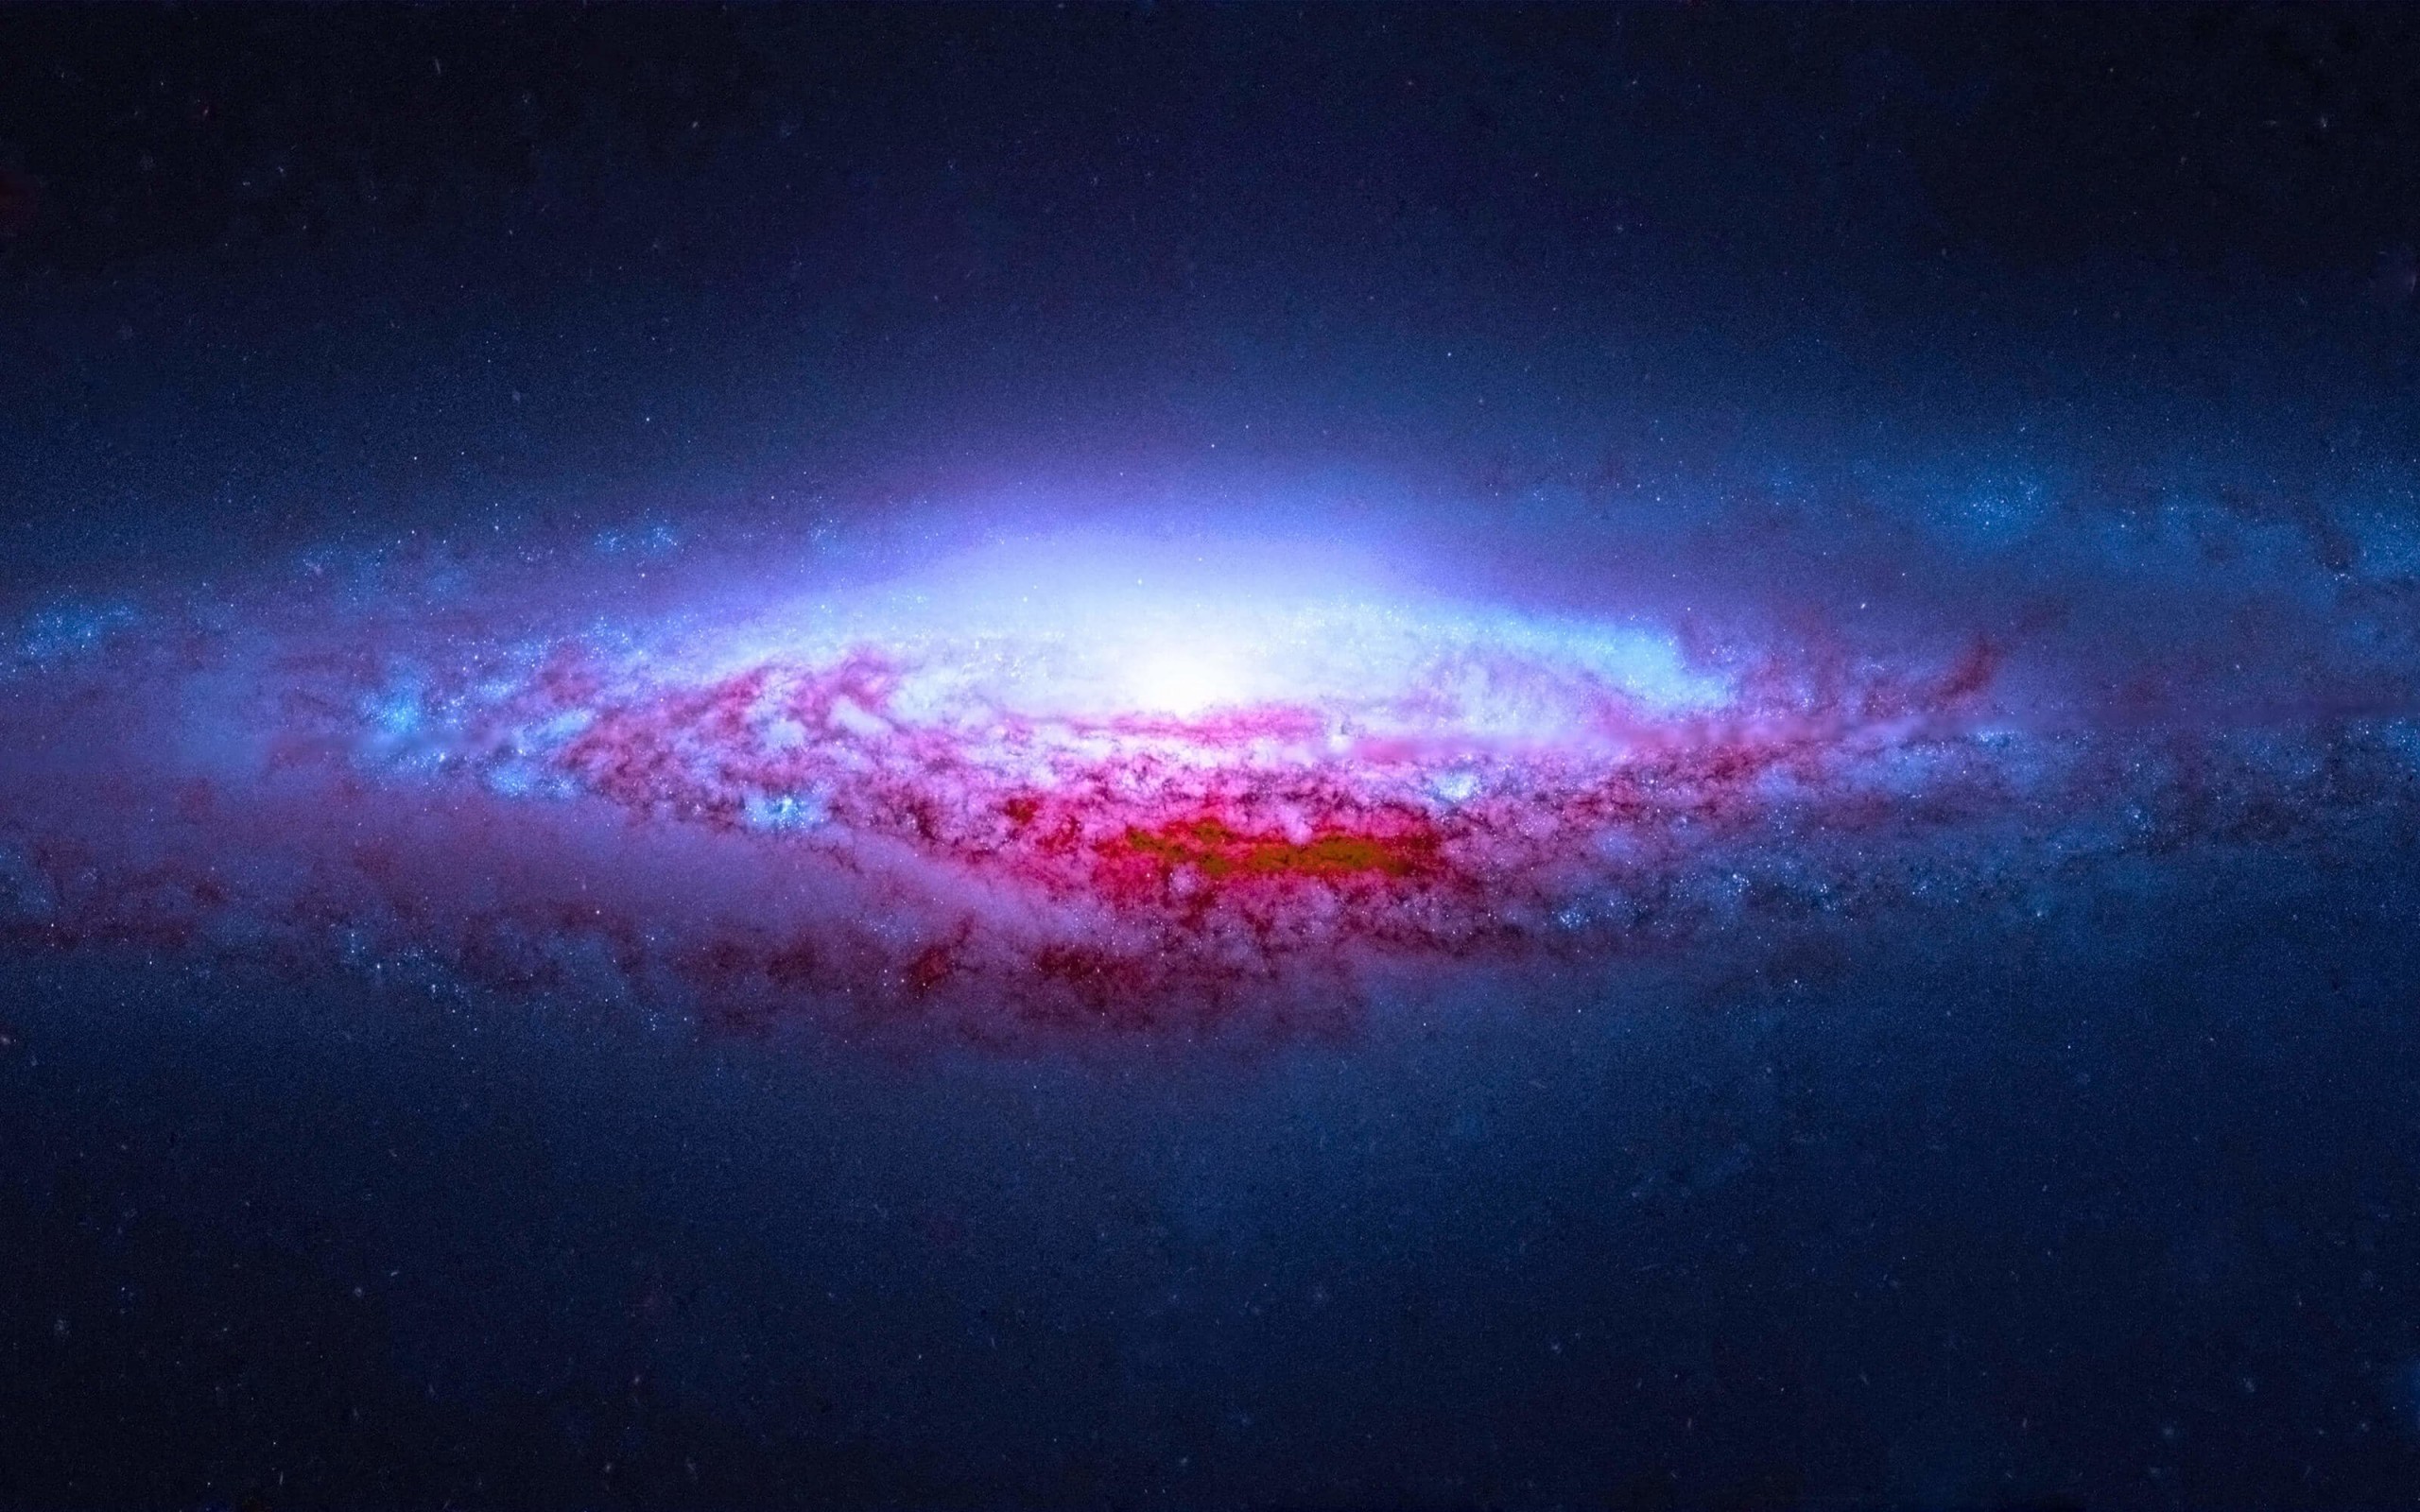 NGC 2683 Spiral Galaxy Wallpaper for Desktop 2560x1600